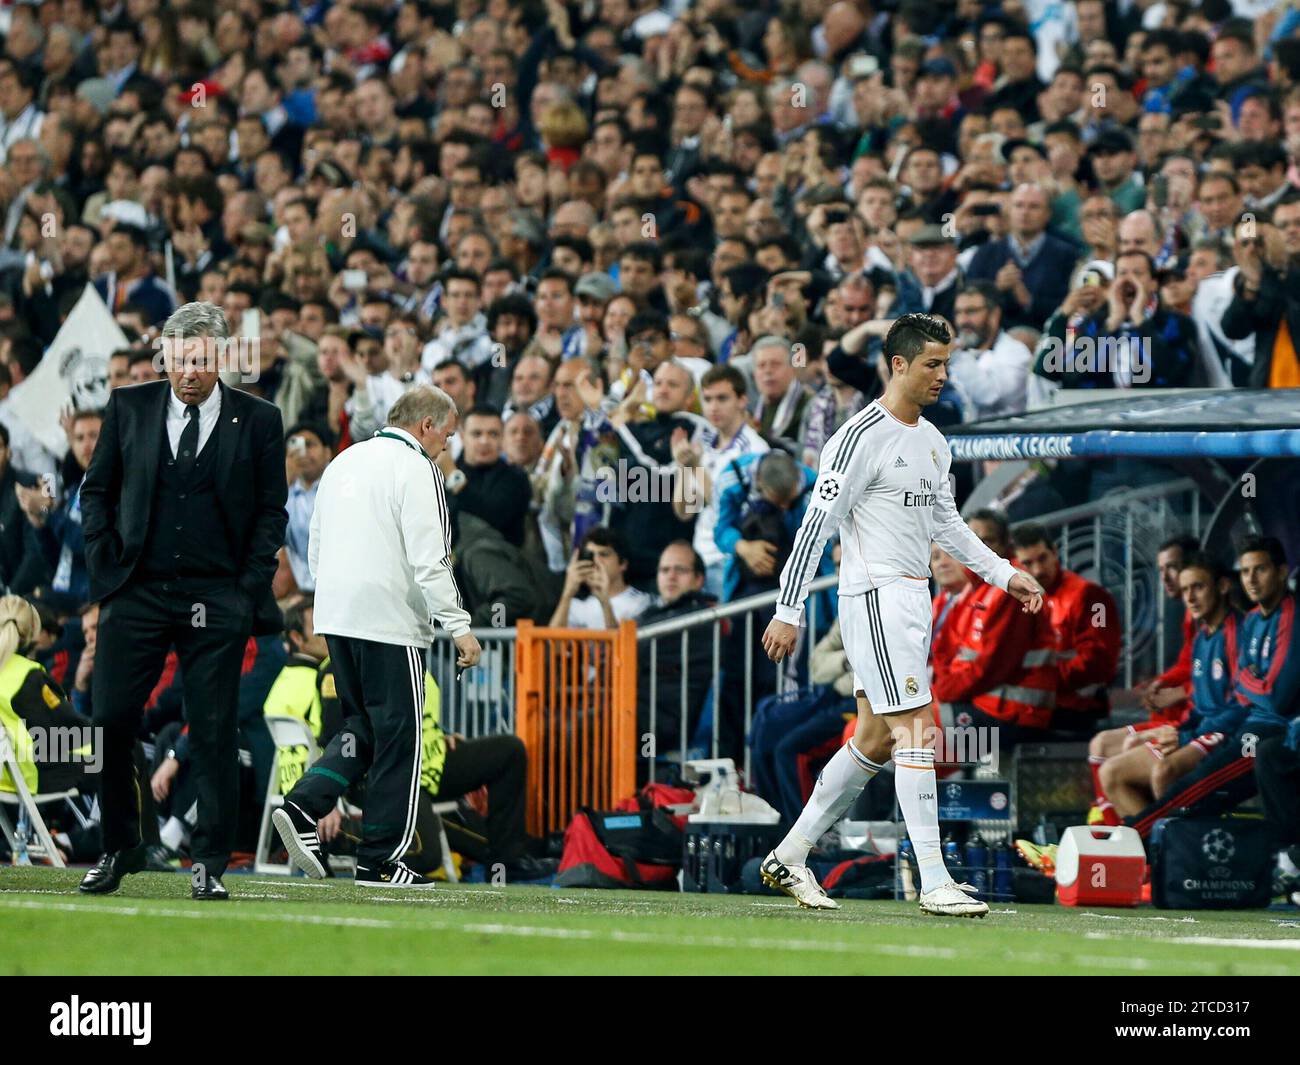 Madrid, April 23, 2014. Champions League semi-final. Real Madrid - Bayern Munich. In the image: Cristiano Ronaldo and Ancelotti. Photo: IGNACIO GIL.archdc. Credit: Album / Archivo ABC / Ignacio Gil Stock Photo